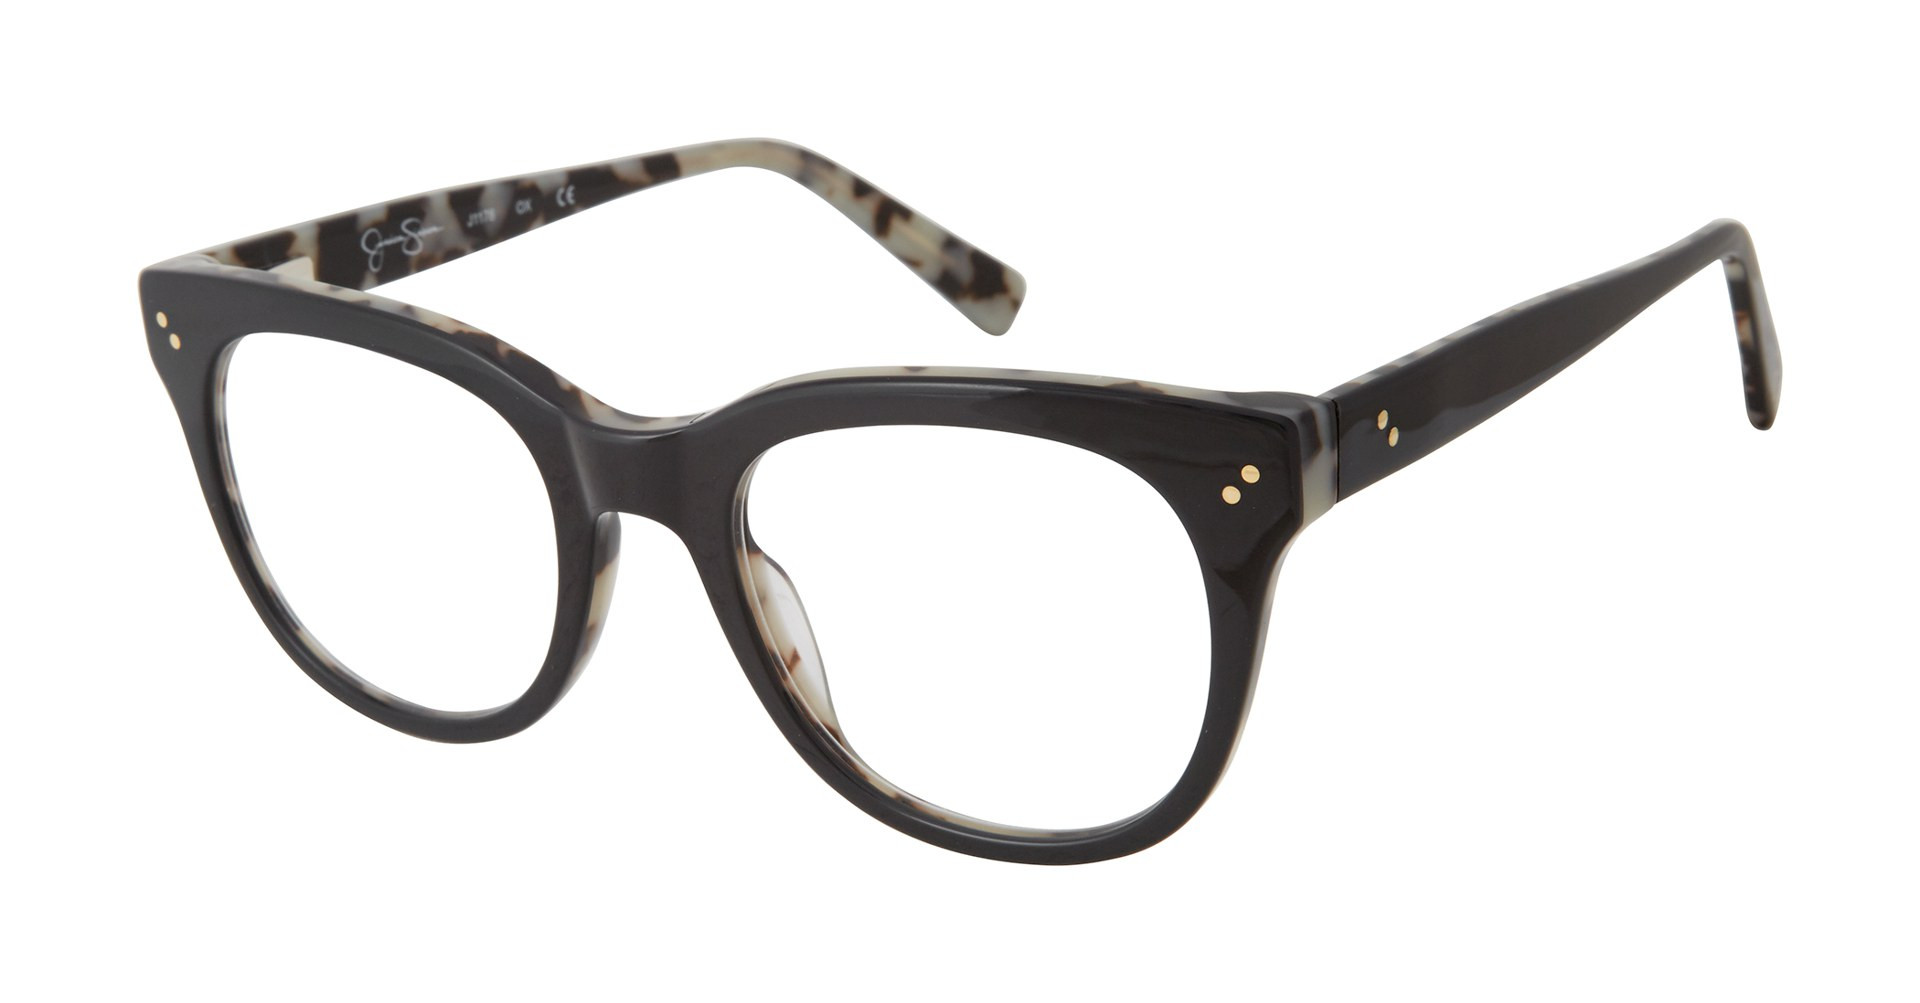 Jessica Simpson J1178 Eyeglasses